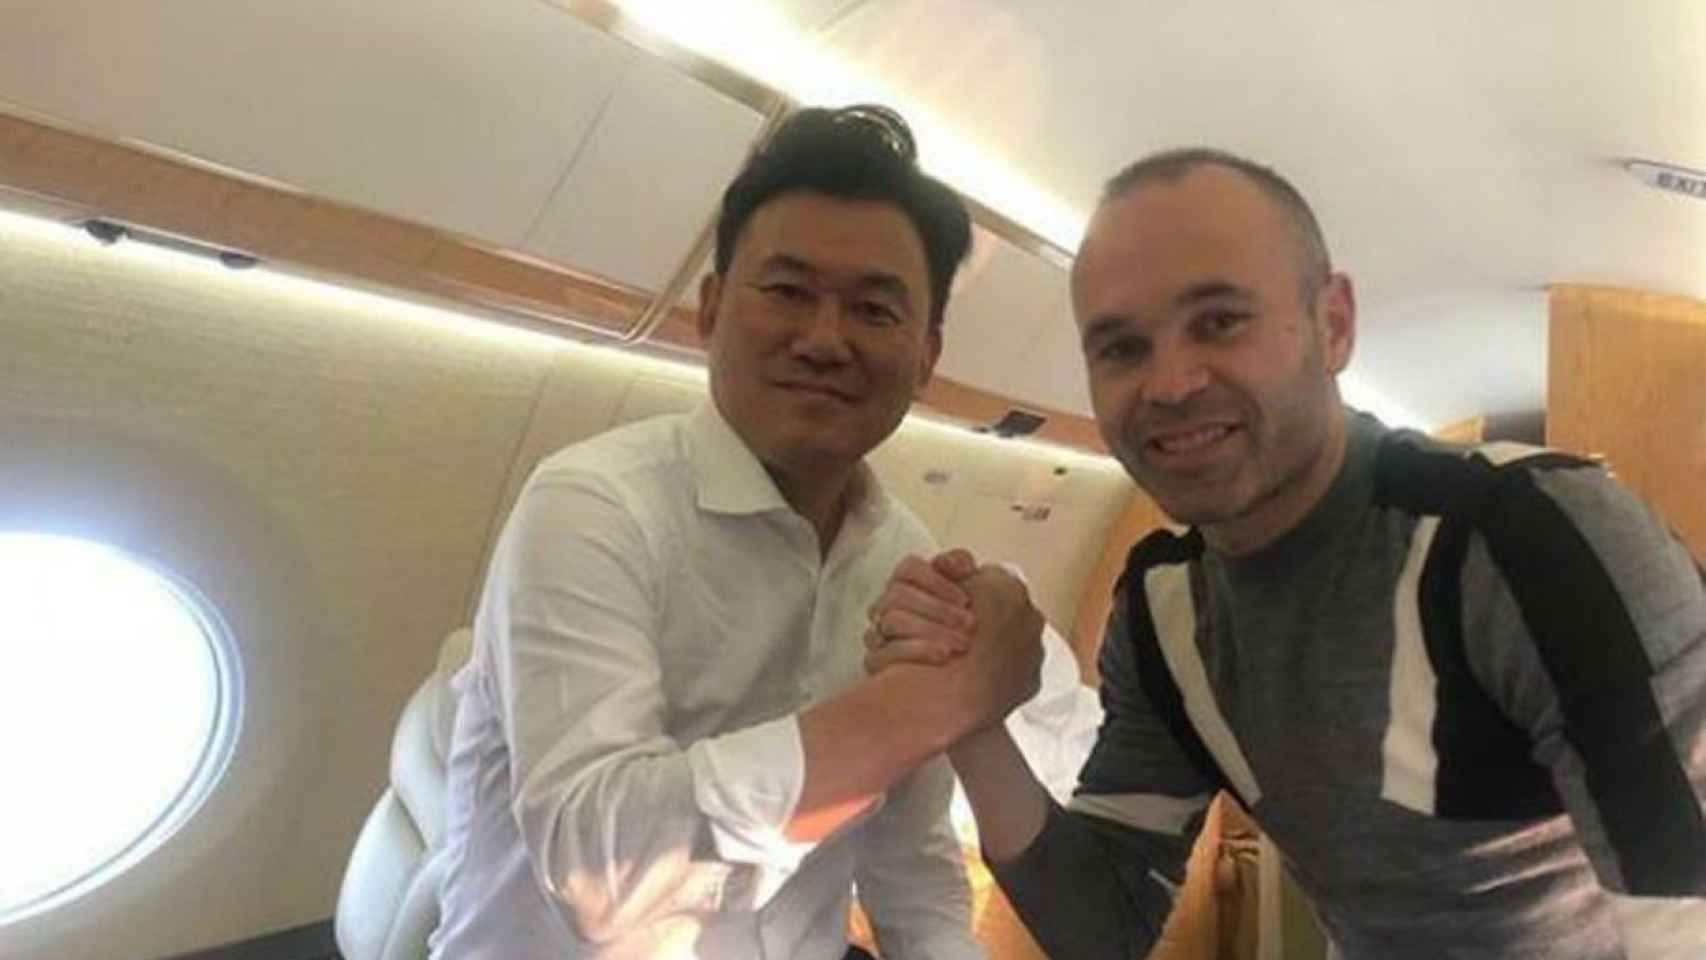 El futbolista sube una foto en las redes sociales con Hiroshi Mikitani volando en un jet privado | INSTAGRAM